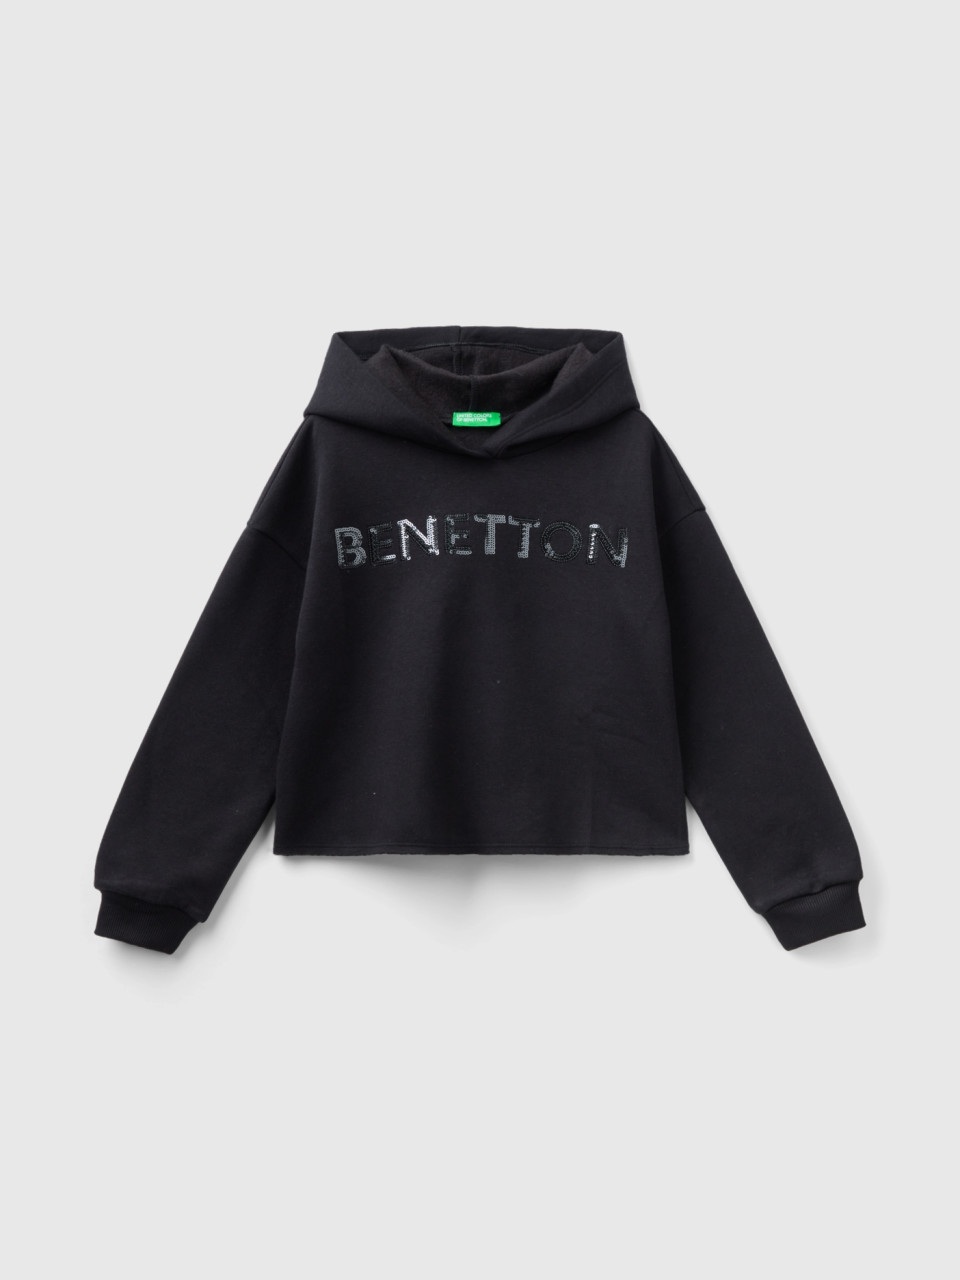 Benetton, Kapuzen-sweatshirt Mit Pailletten, Schwarz, female